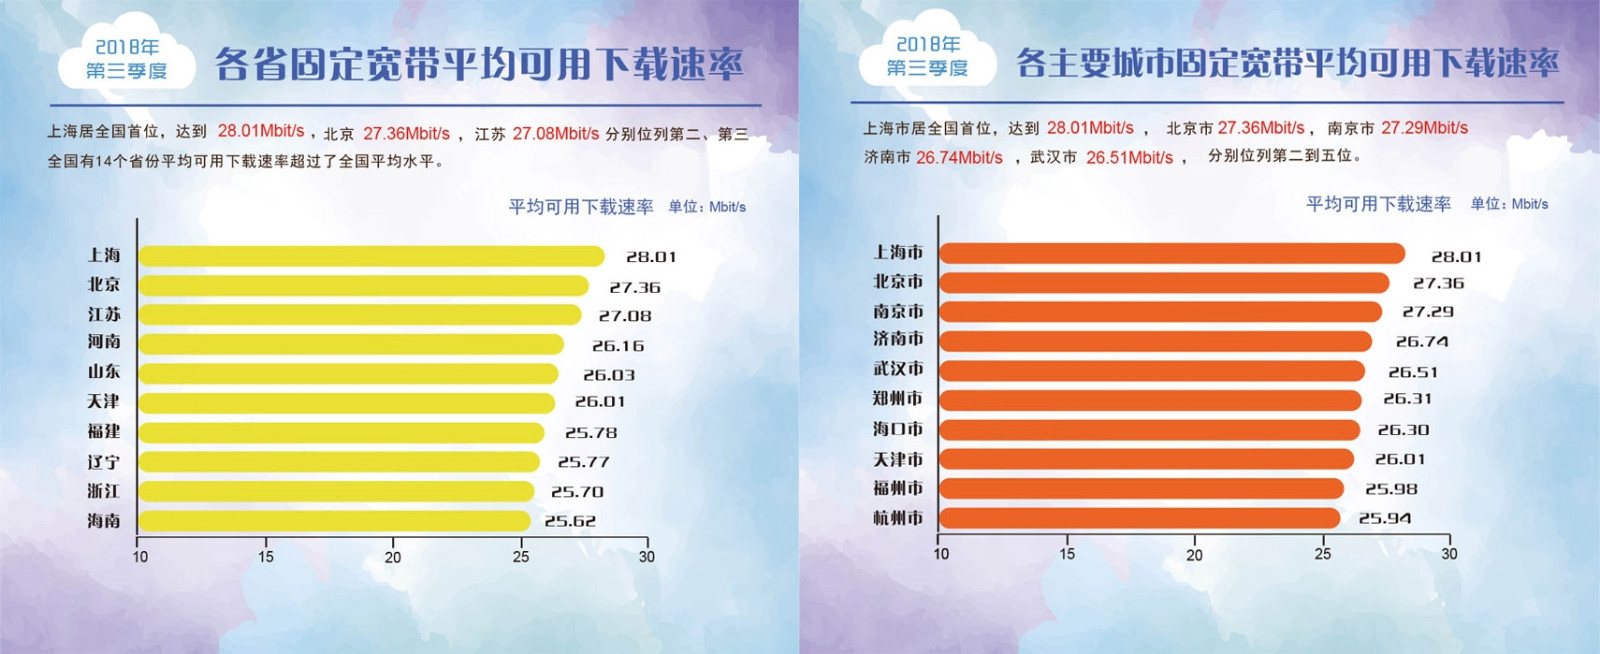 宽带发展联盟：2018年Q3中国4G下载网速达21.46Mbps 同比增长39.9%